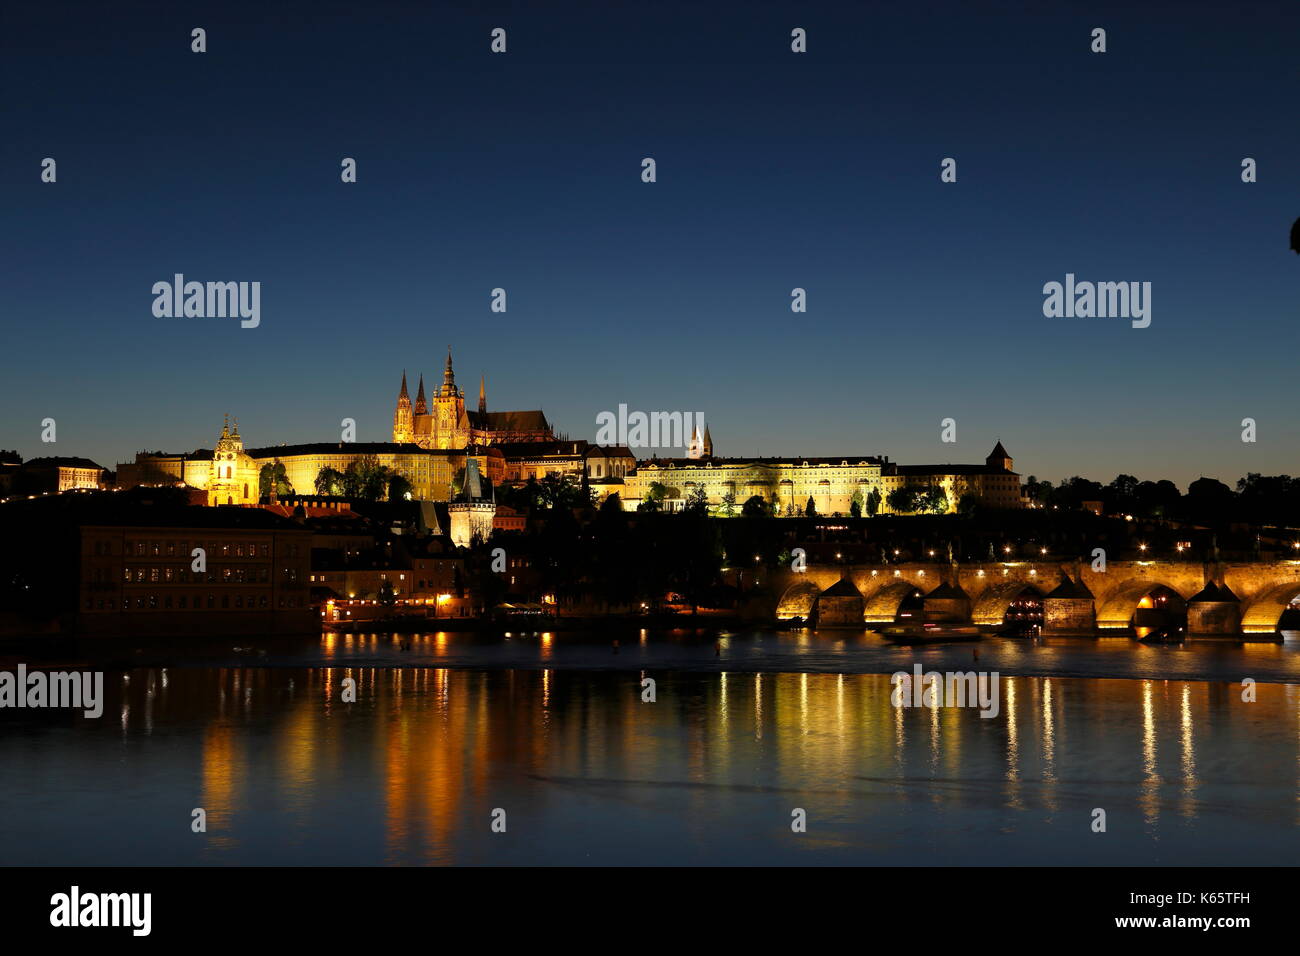 Vue sur le château de Prague et le pont Charles la nuit, Prague, République tchèque Banque D'Images